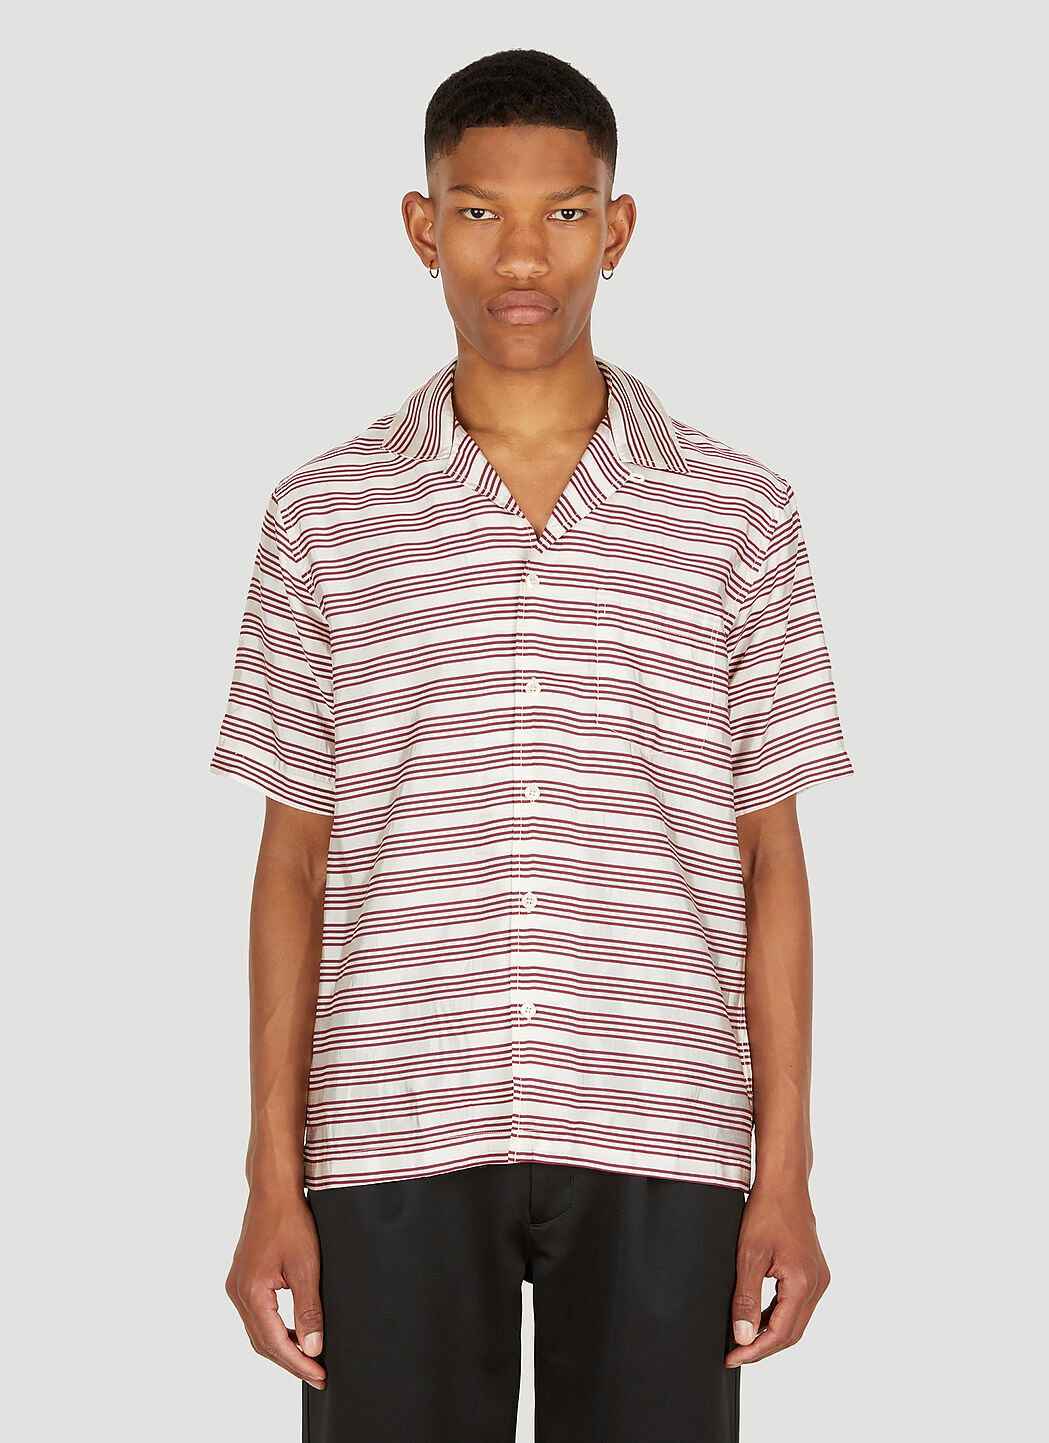 Soulland Orson 条纹衬衫 粉色 sld0352002